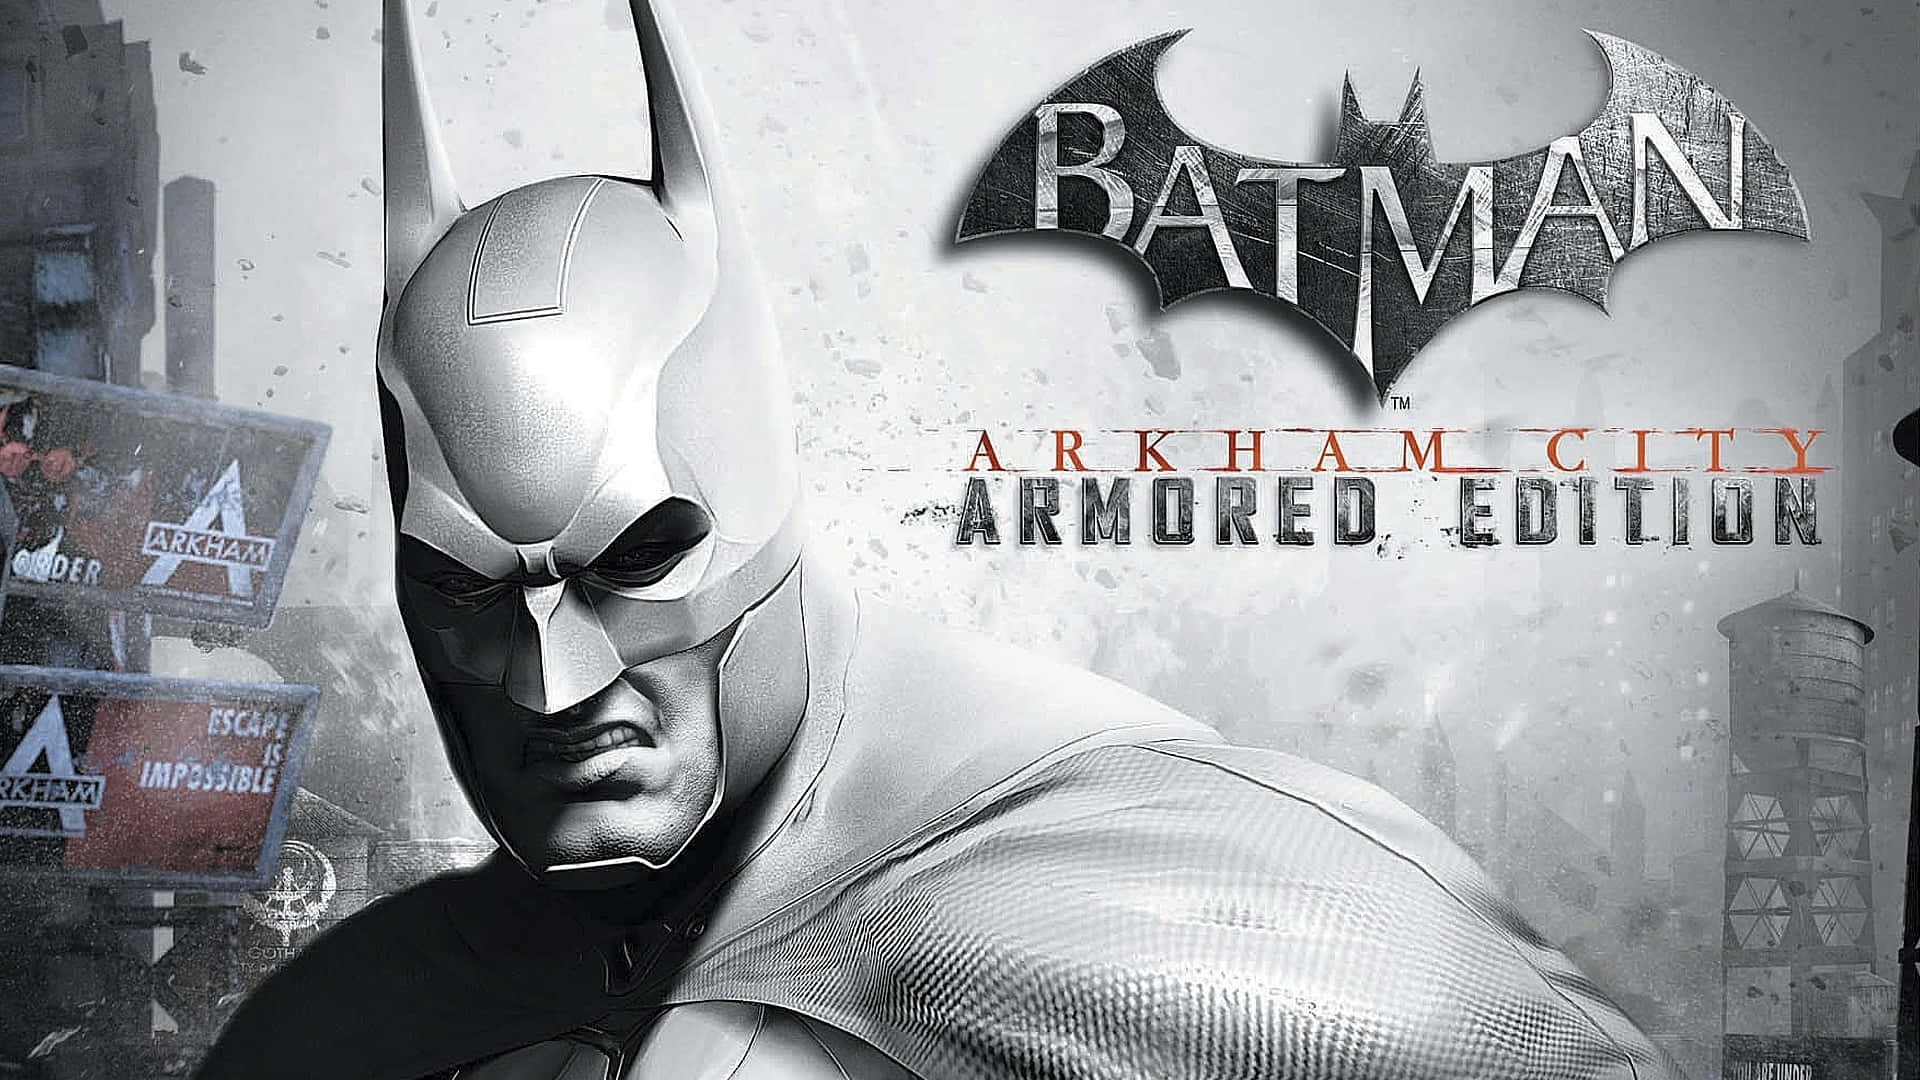 Batmanse Enfrenta A Un Peligroso Enemigo En Arkham City.